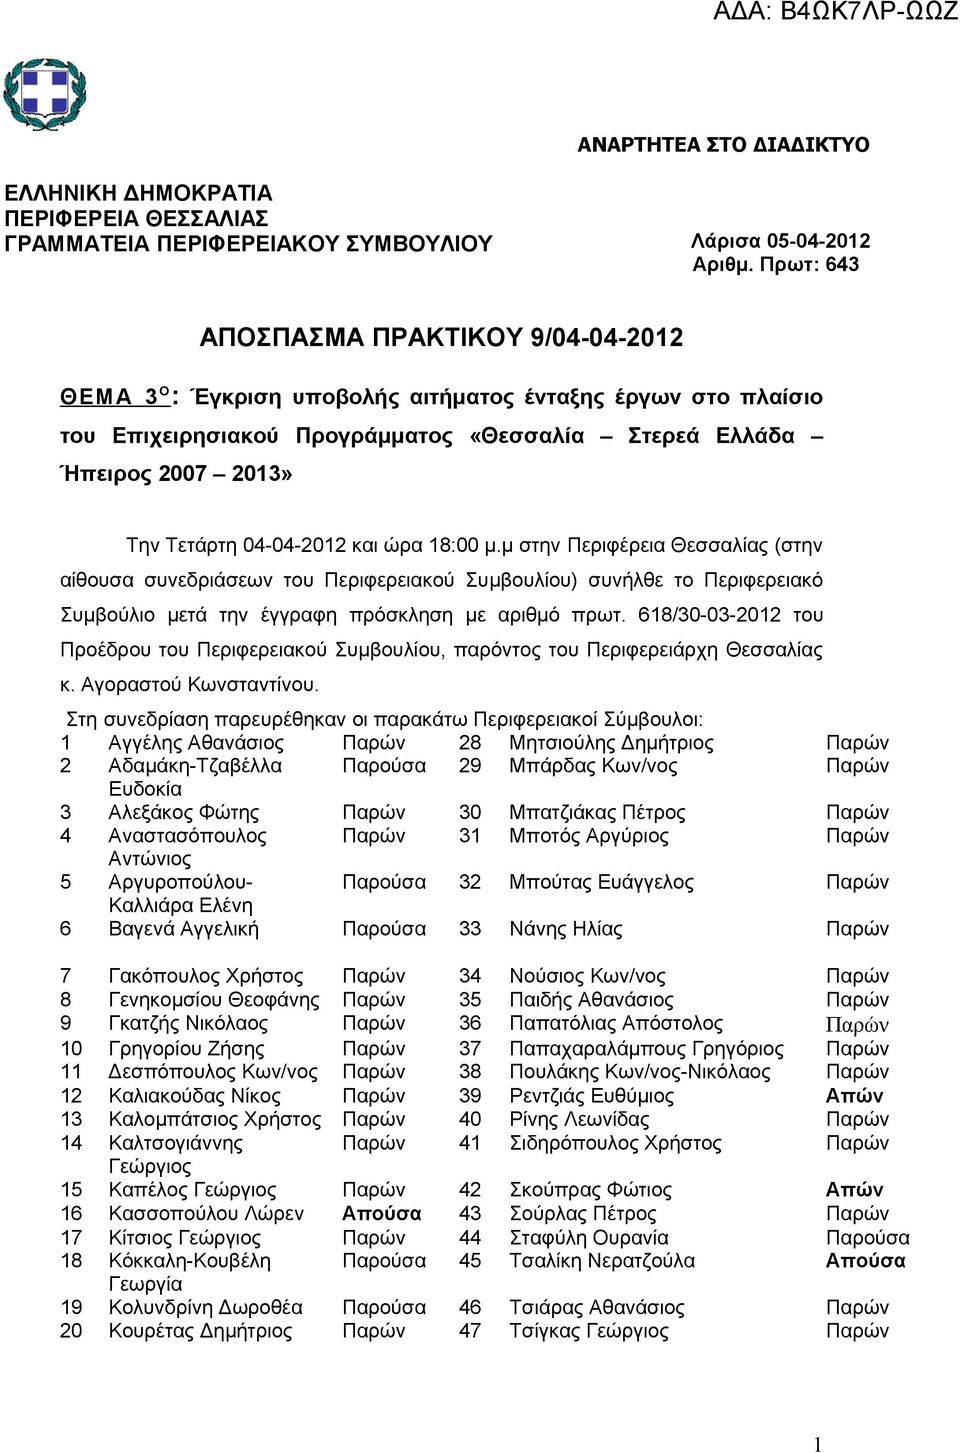 04-04-2012 και ώρα 18:00 μ.μ στην Περιφέρεια Θεσσαλίας (στην αίθουσα συνεδριάσεων του Περιφερειακού Συμβουλίου) συνήλθε το Περιφερειακό Συμβούλιο μετά την έγγραφη πρόσκληση με αριθμό πρωτ.